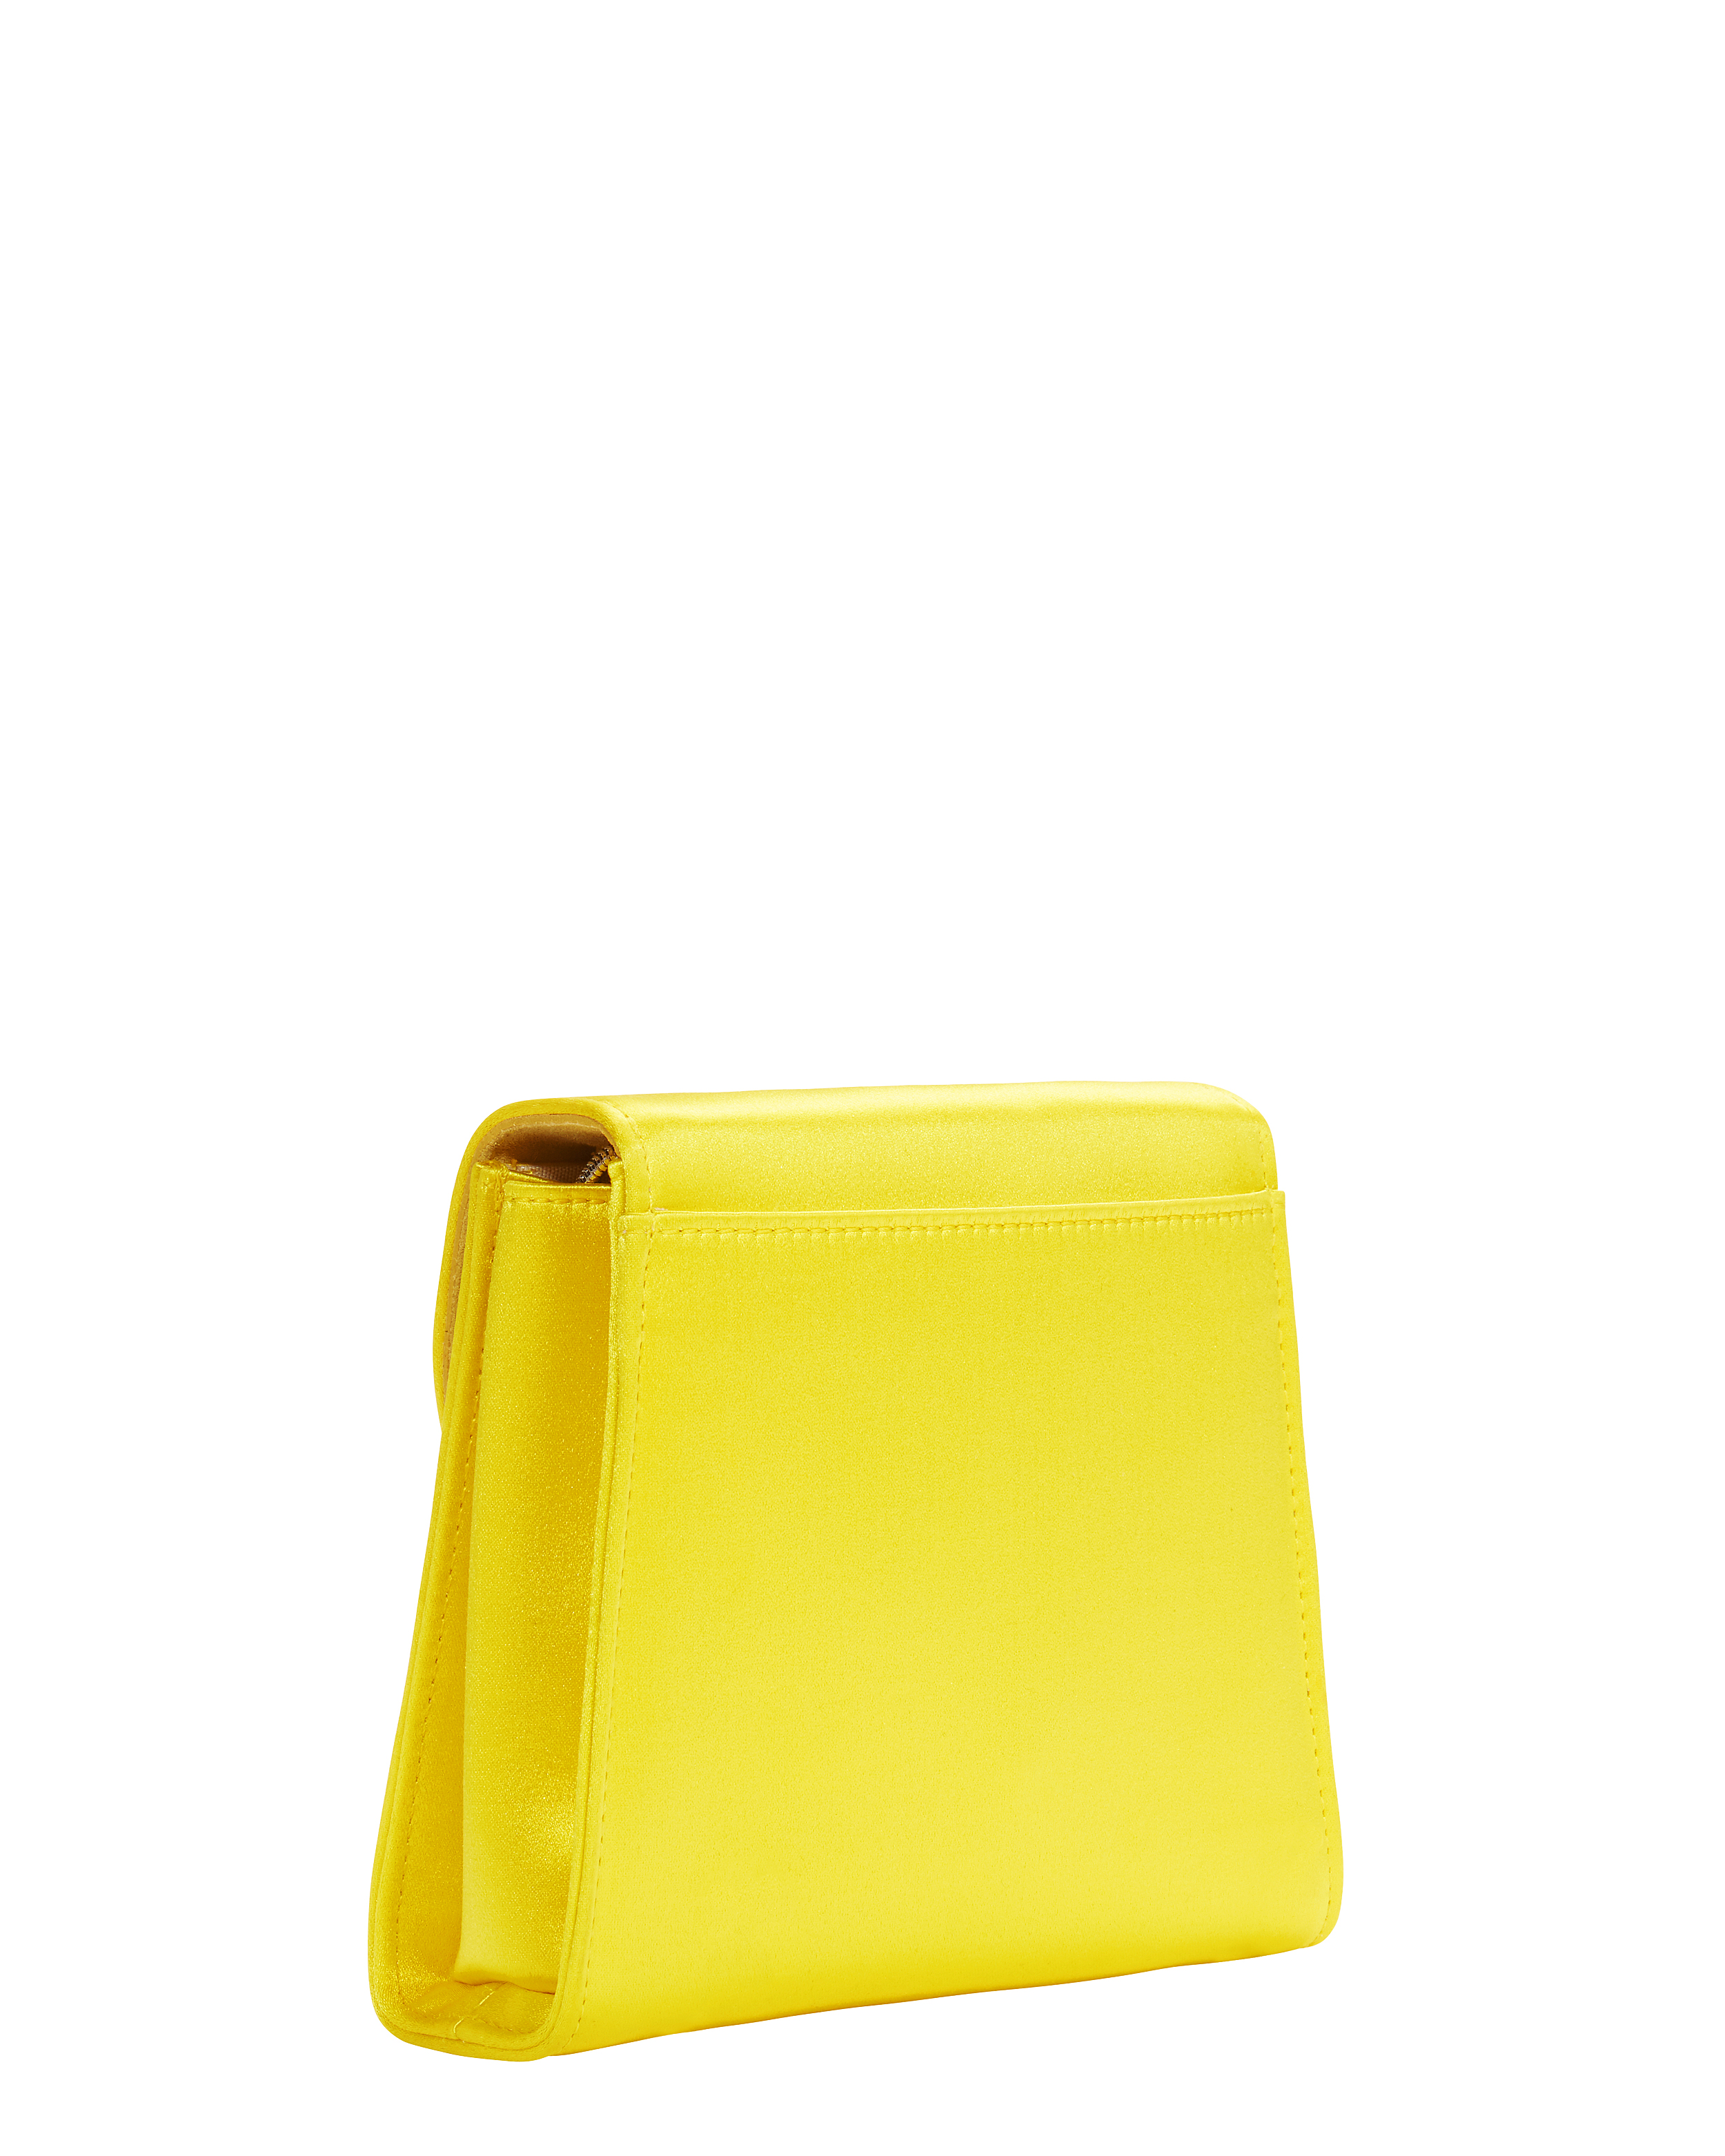 Tiny Box Satin Yellow Bag